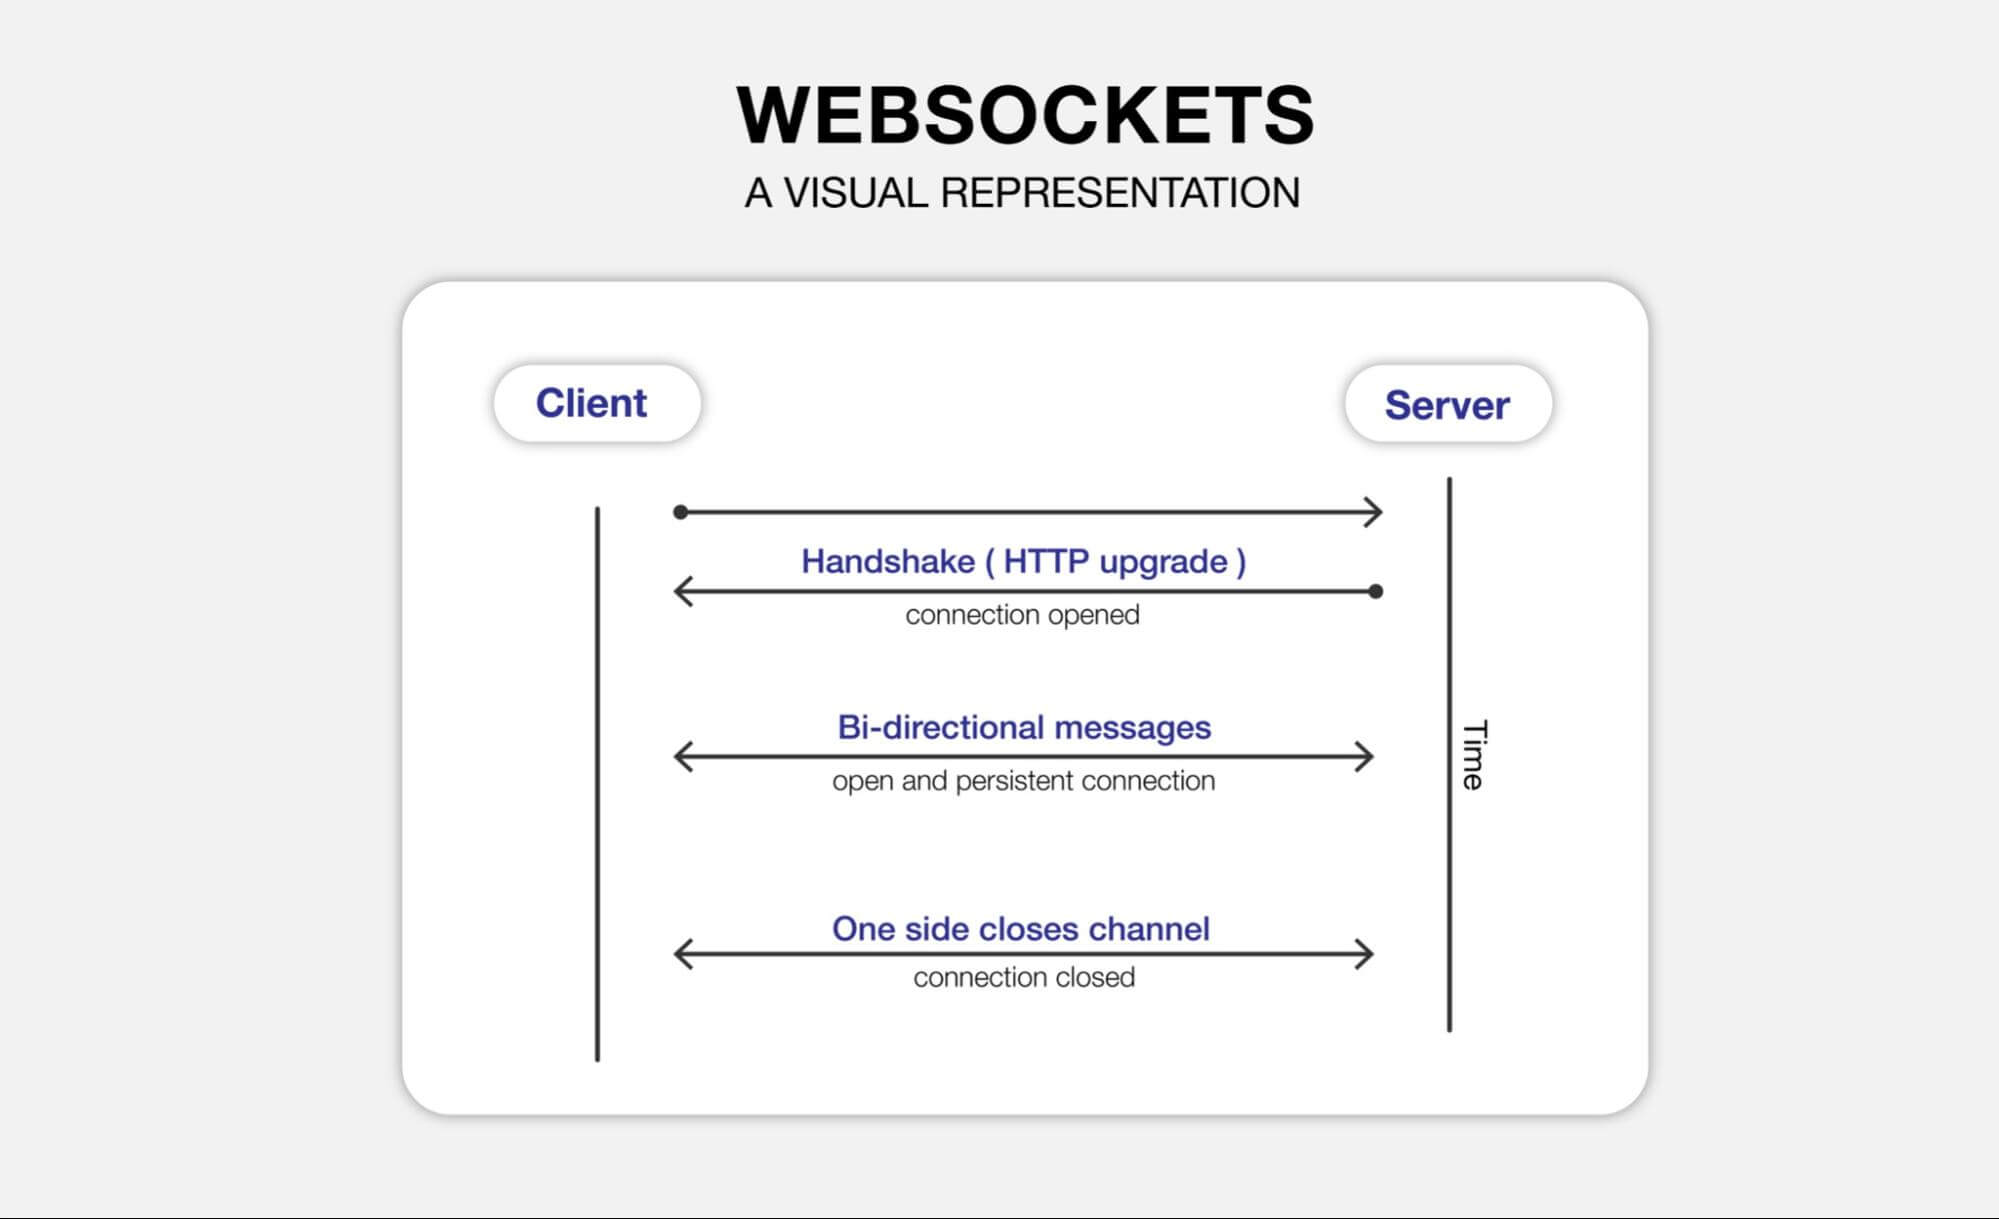 Remote debugging and WebSockets